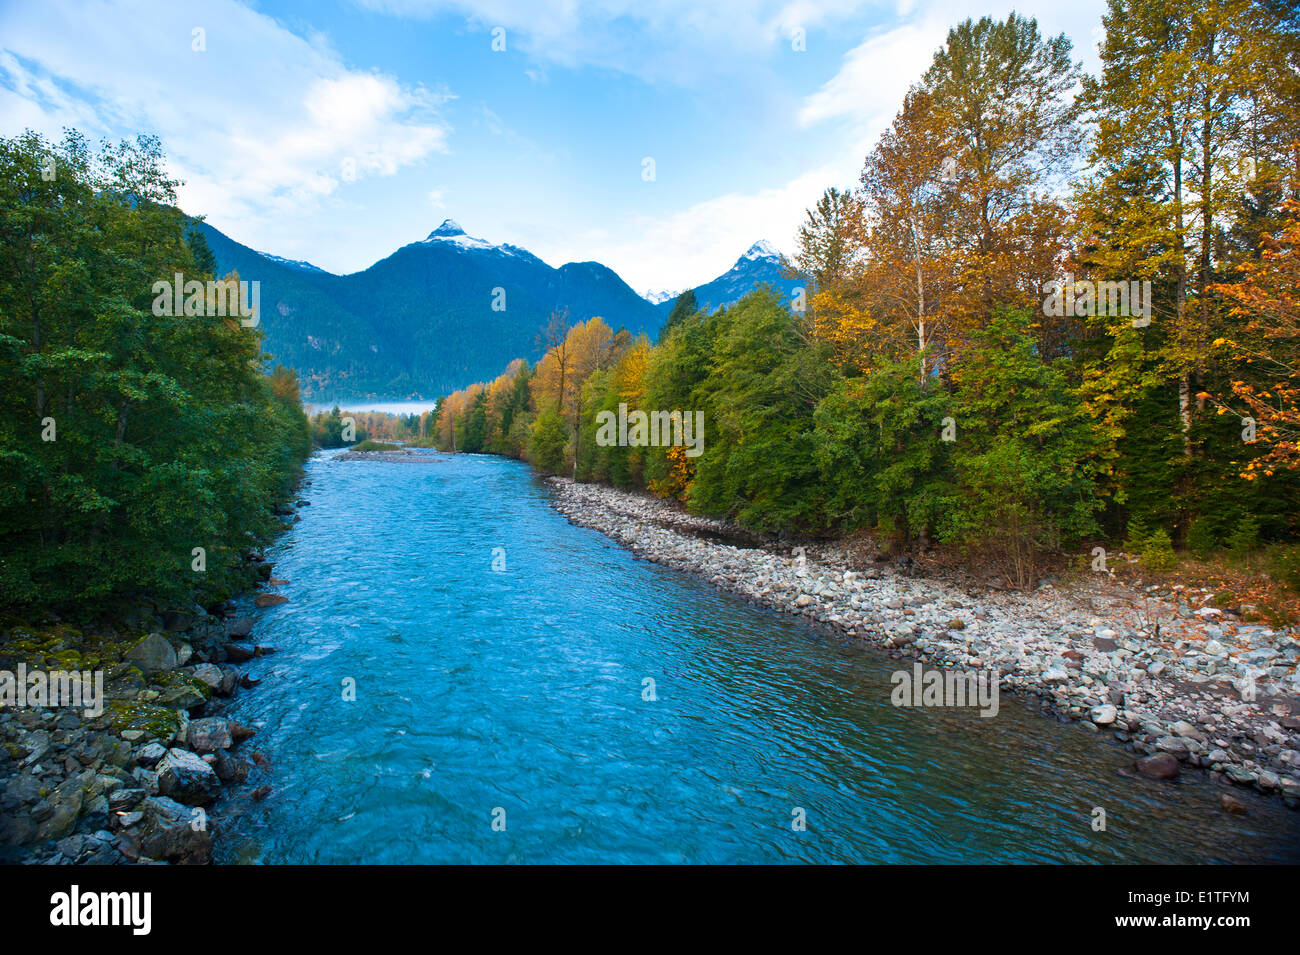 Cheakamus River, British Columbia, Canada Stock Photo